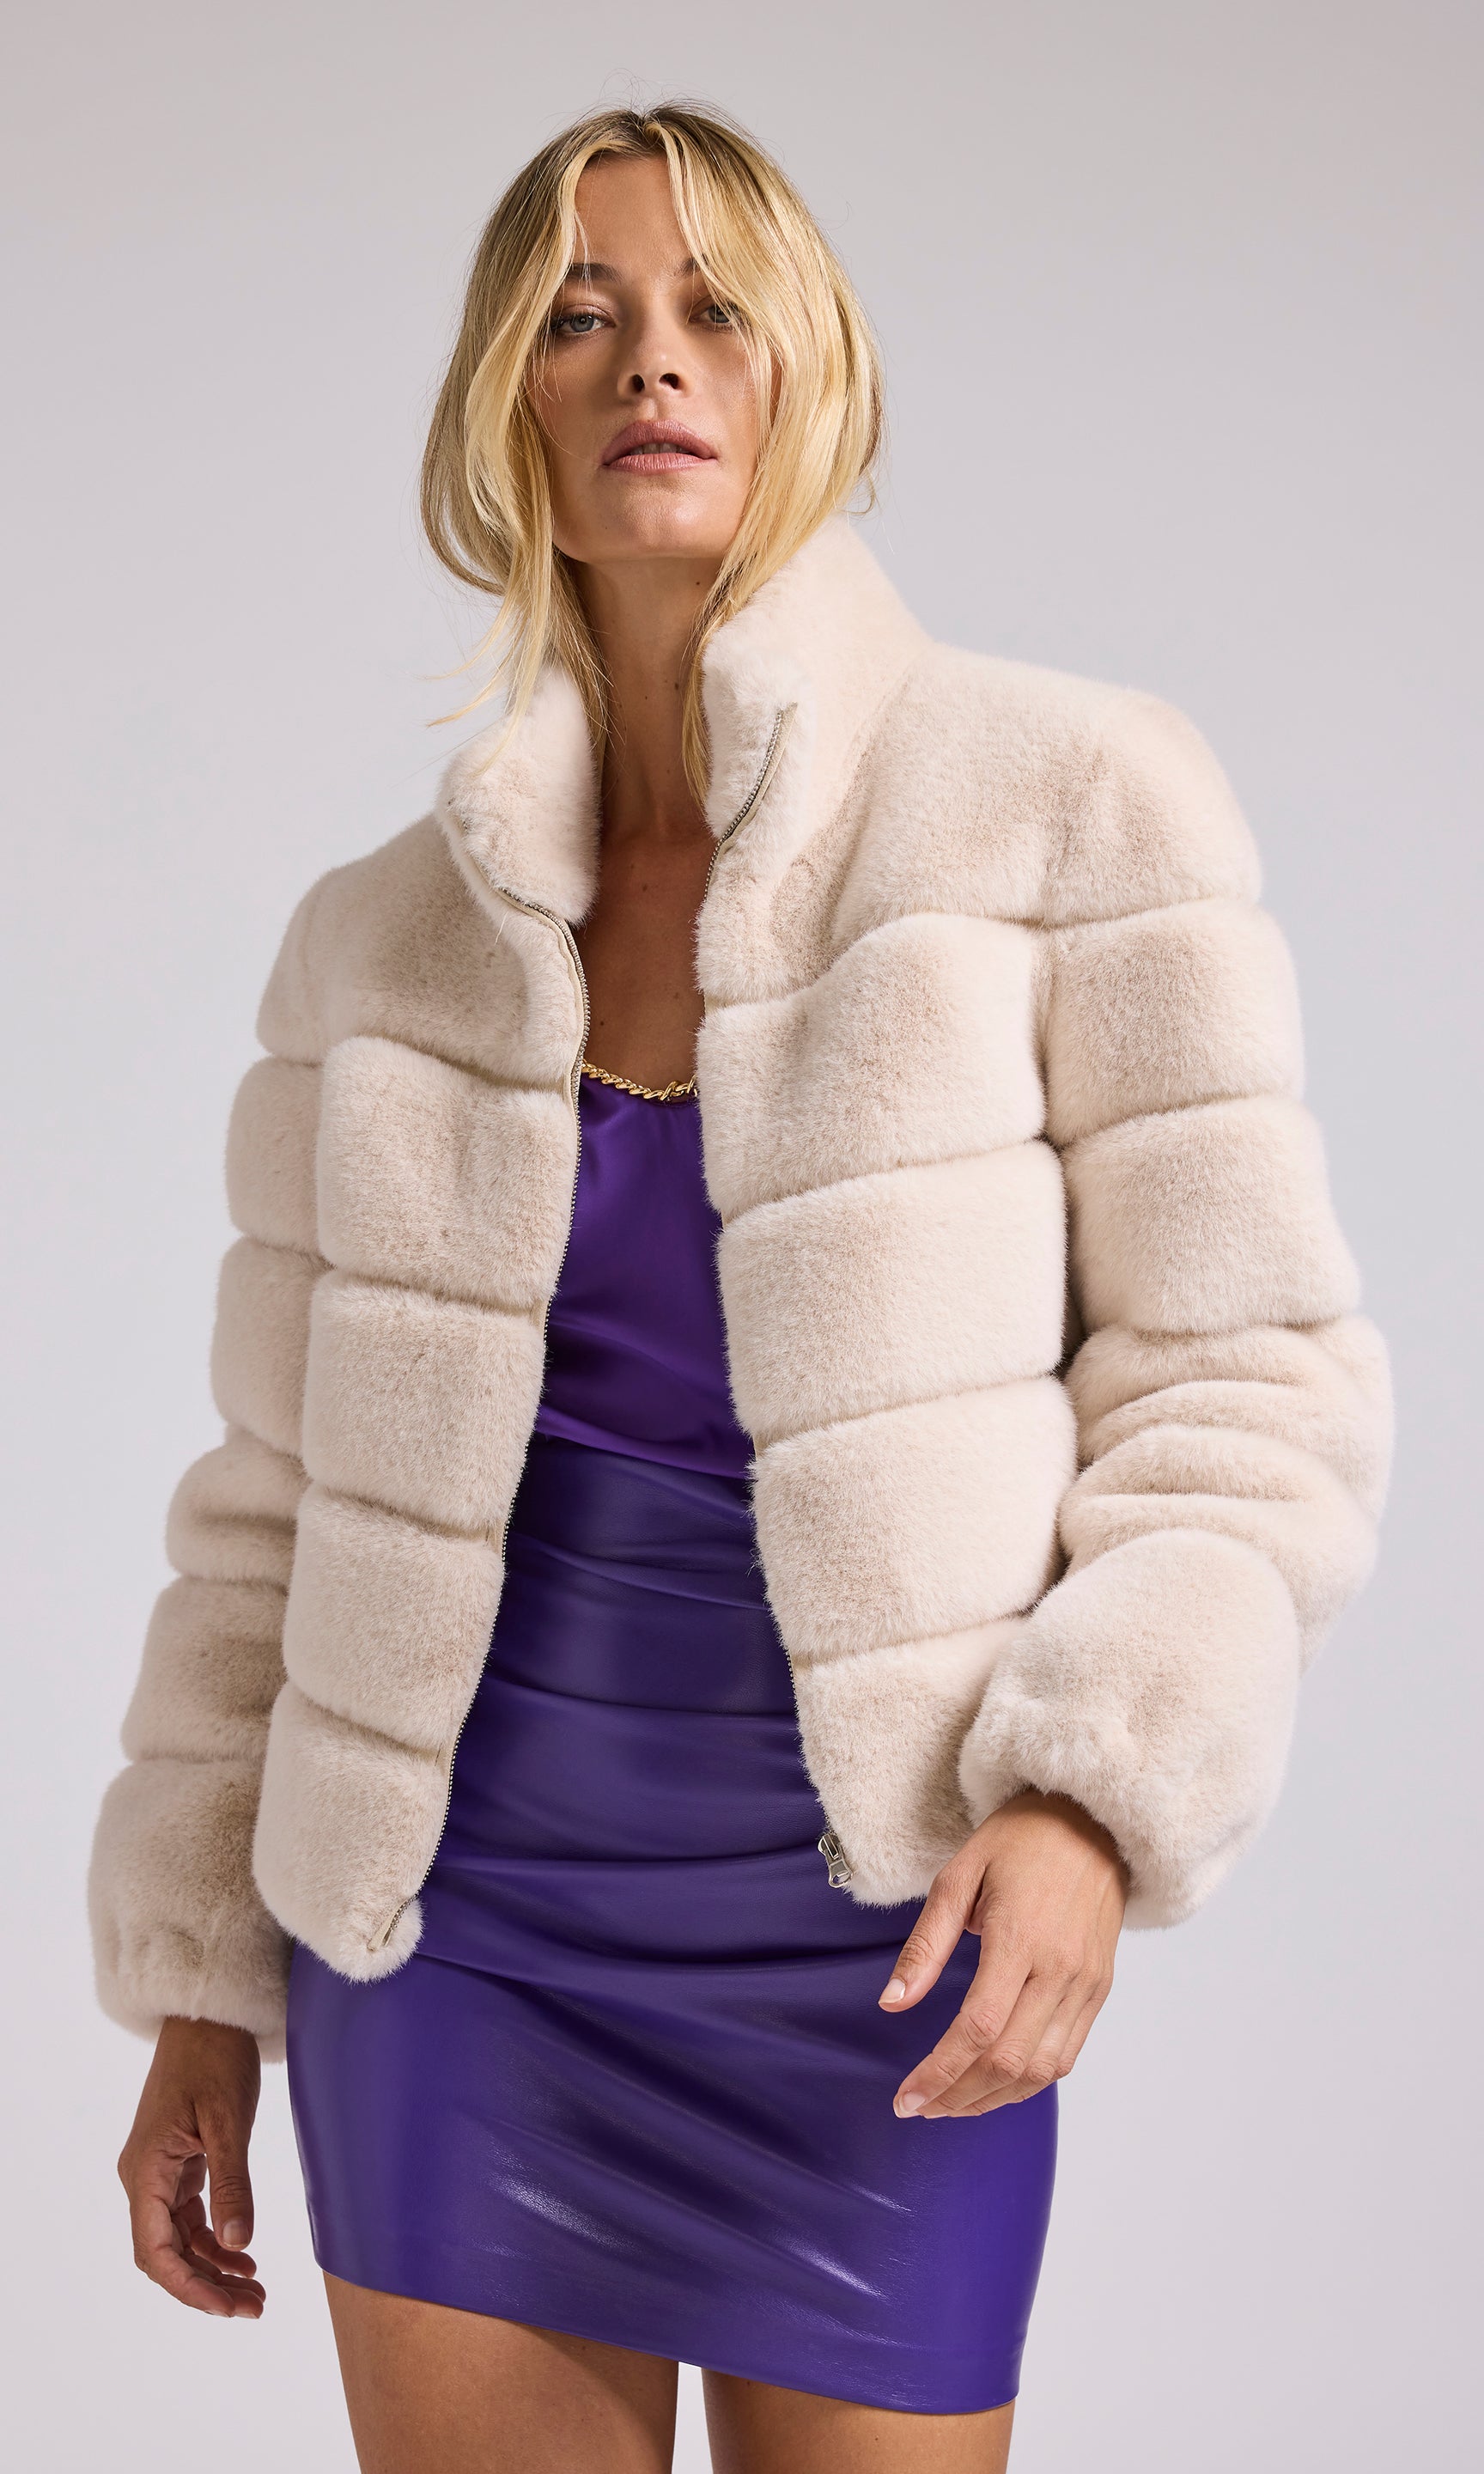 Faux Fur Jacket - Beige - Ladies